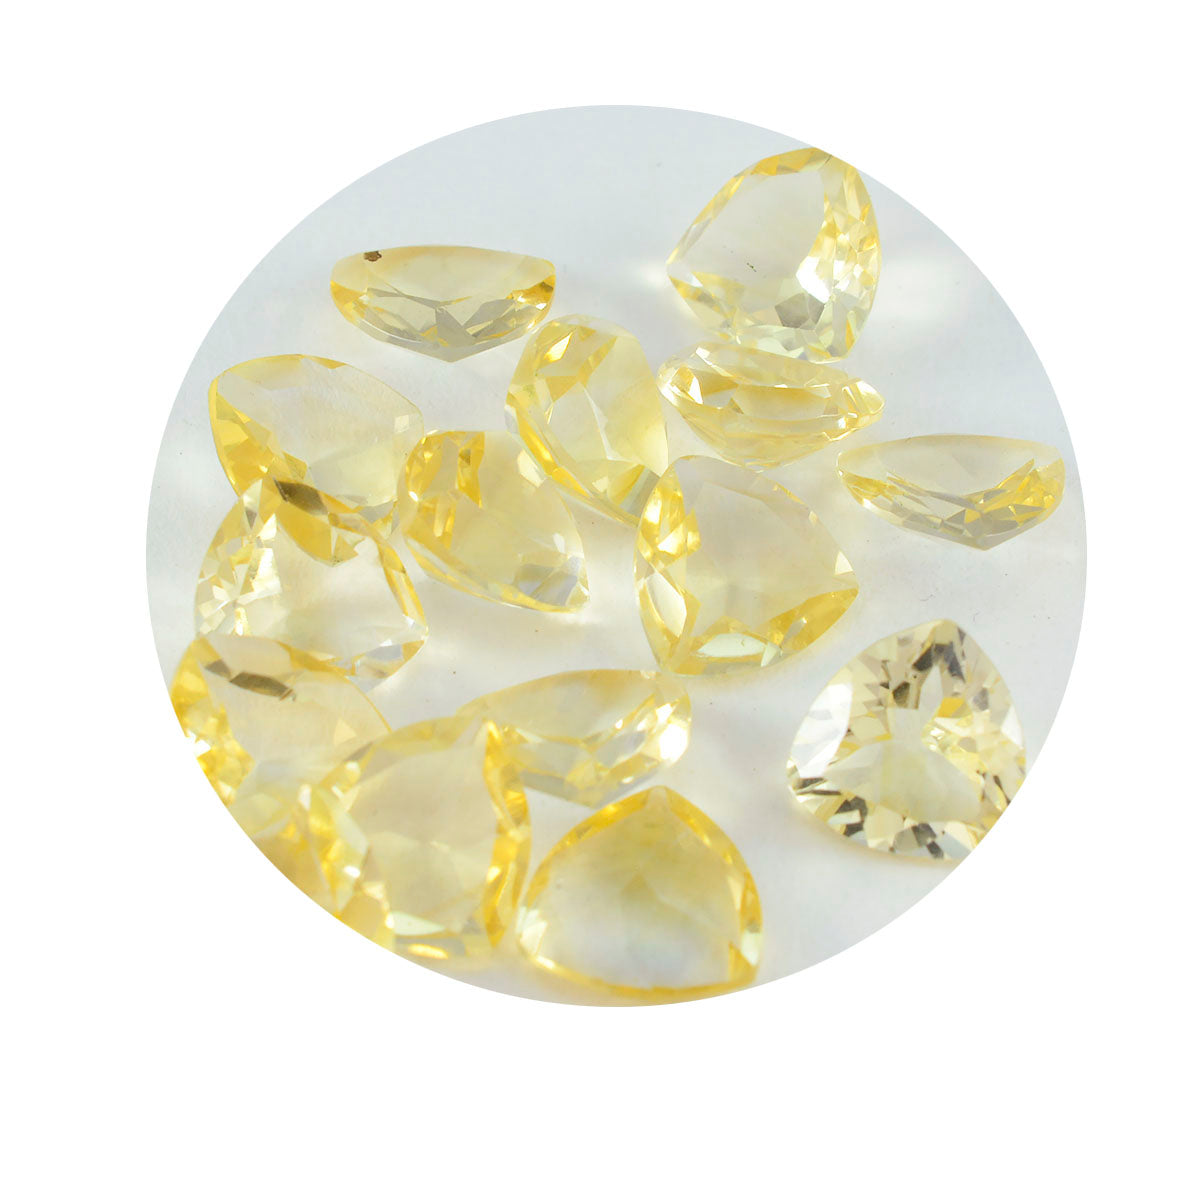 riyogems 1 шт. натуральный желтый цитрин ограненный 6x6 мм драгоценный камень в форме триллиона прекрасного качества